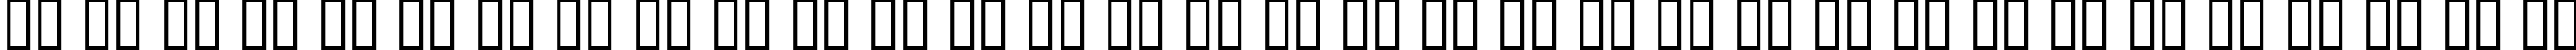 Пример написания русского алфавита шрифтом Aquiline